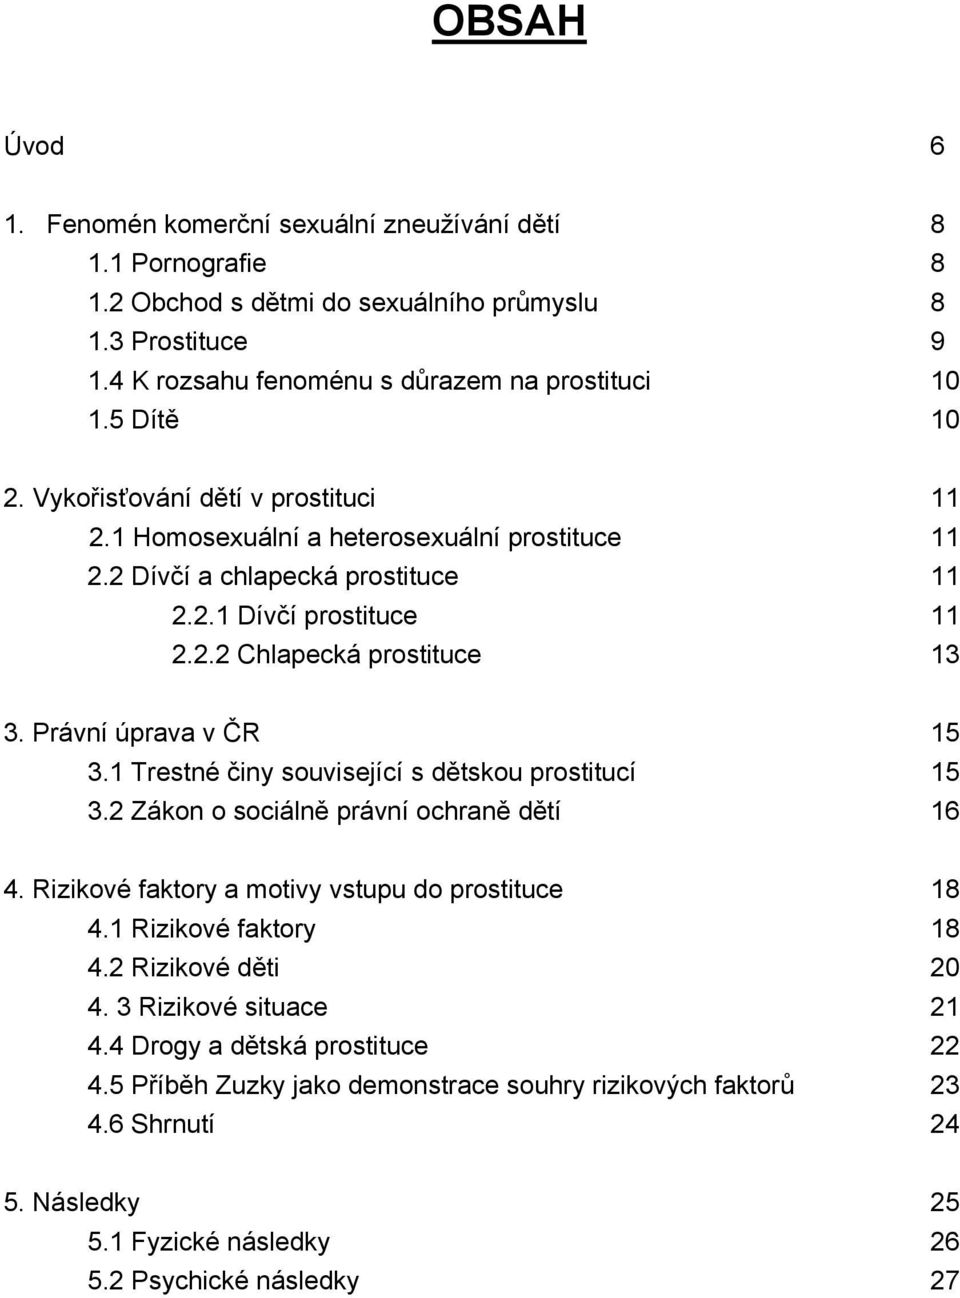 Právní úprava v ČR 15 3.1 Trestné činy související s dětskou prostitucí 15 3.2 Zákon o sociálně právní ochraně dětí 16 4. Rizikové faktory a motivy vstupu do prostituce 18 4.1 Rizikové faktory 18 4.